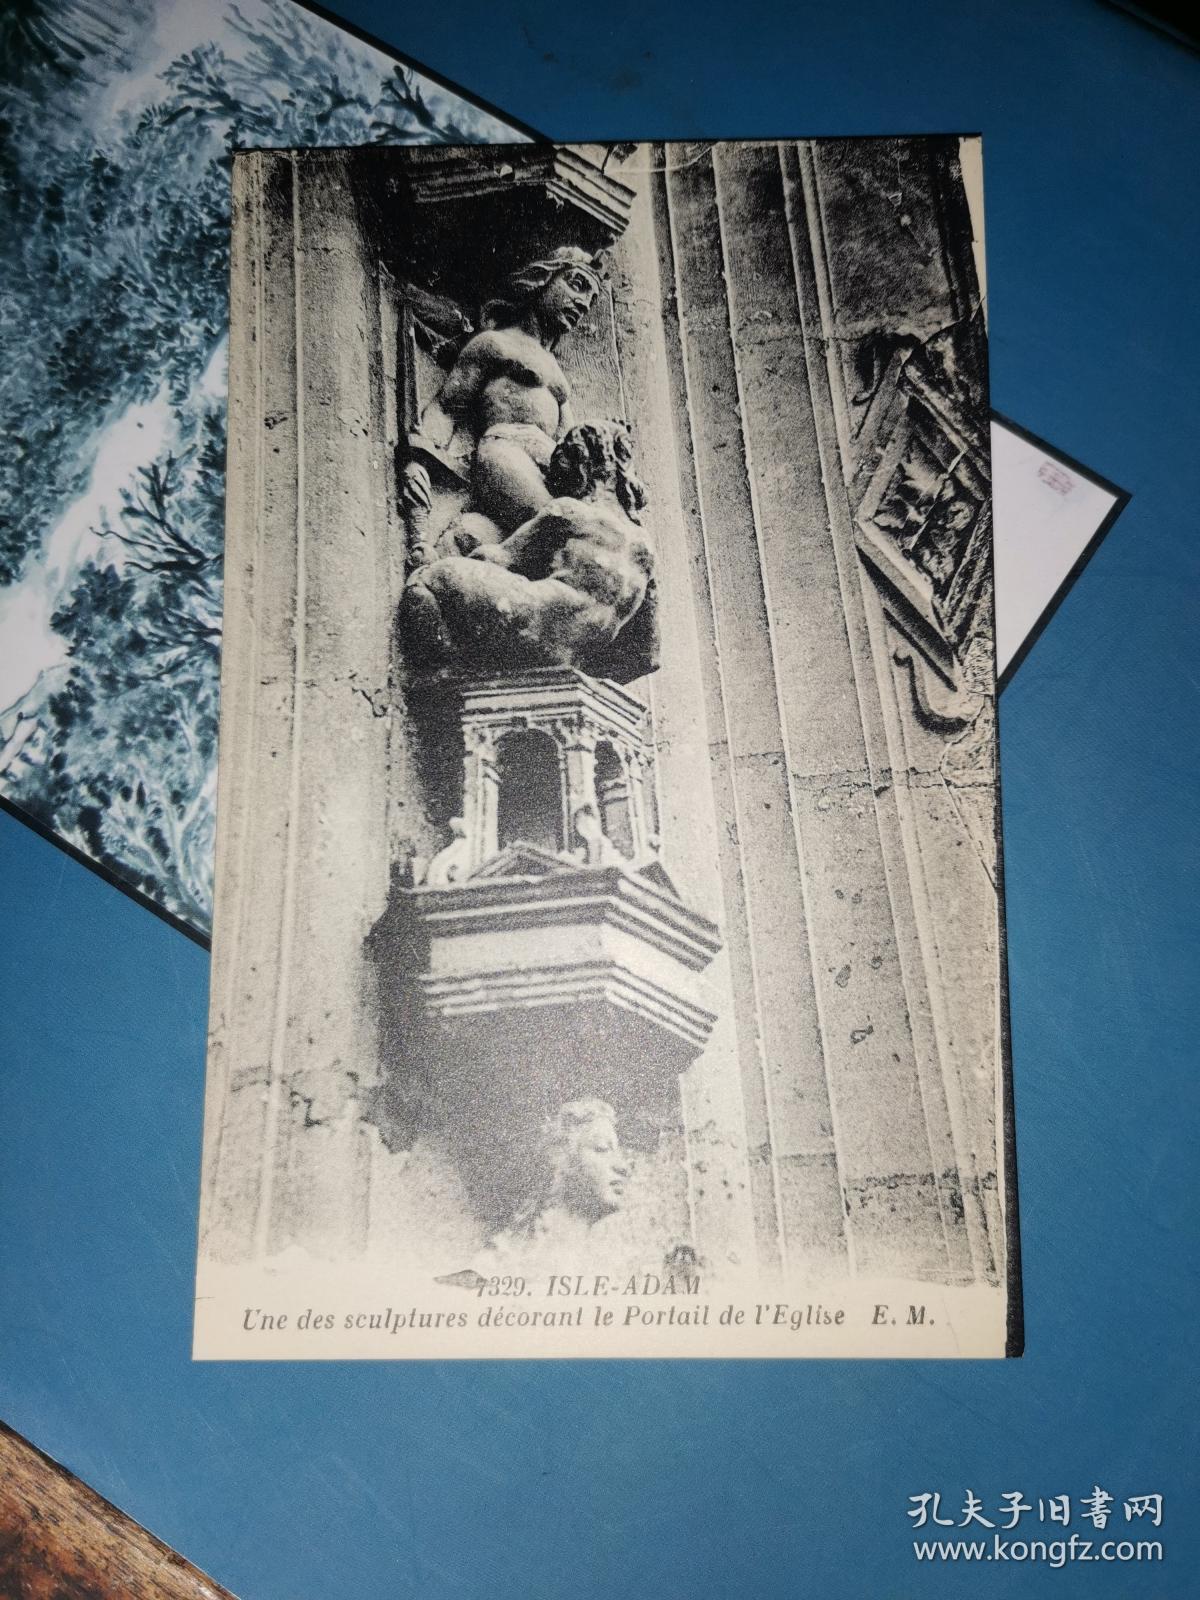 法国明信片               ISLE-ADAM UNE DES SCULPLURES DECORANL LE PORTAIL DE L'EGLISE E.M.
亚当岛 教堂大门的雕塑